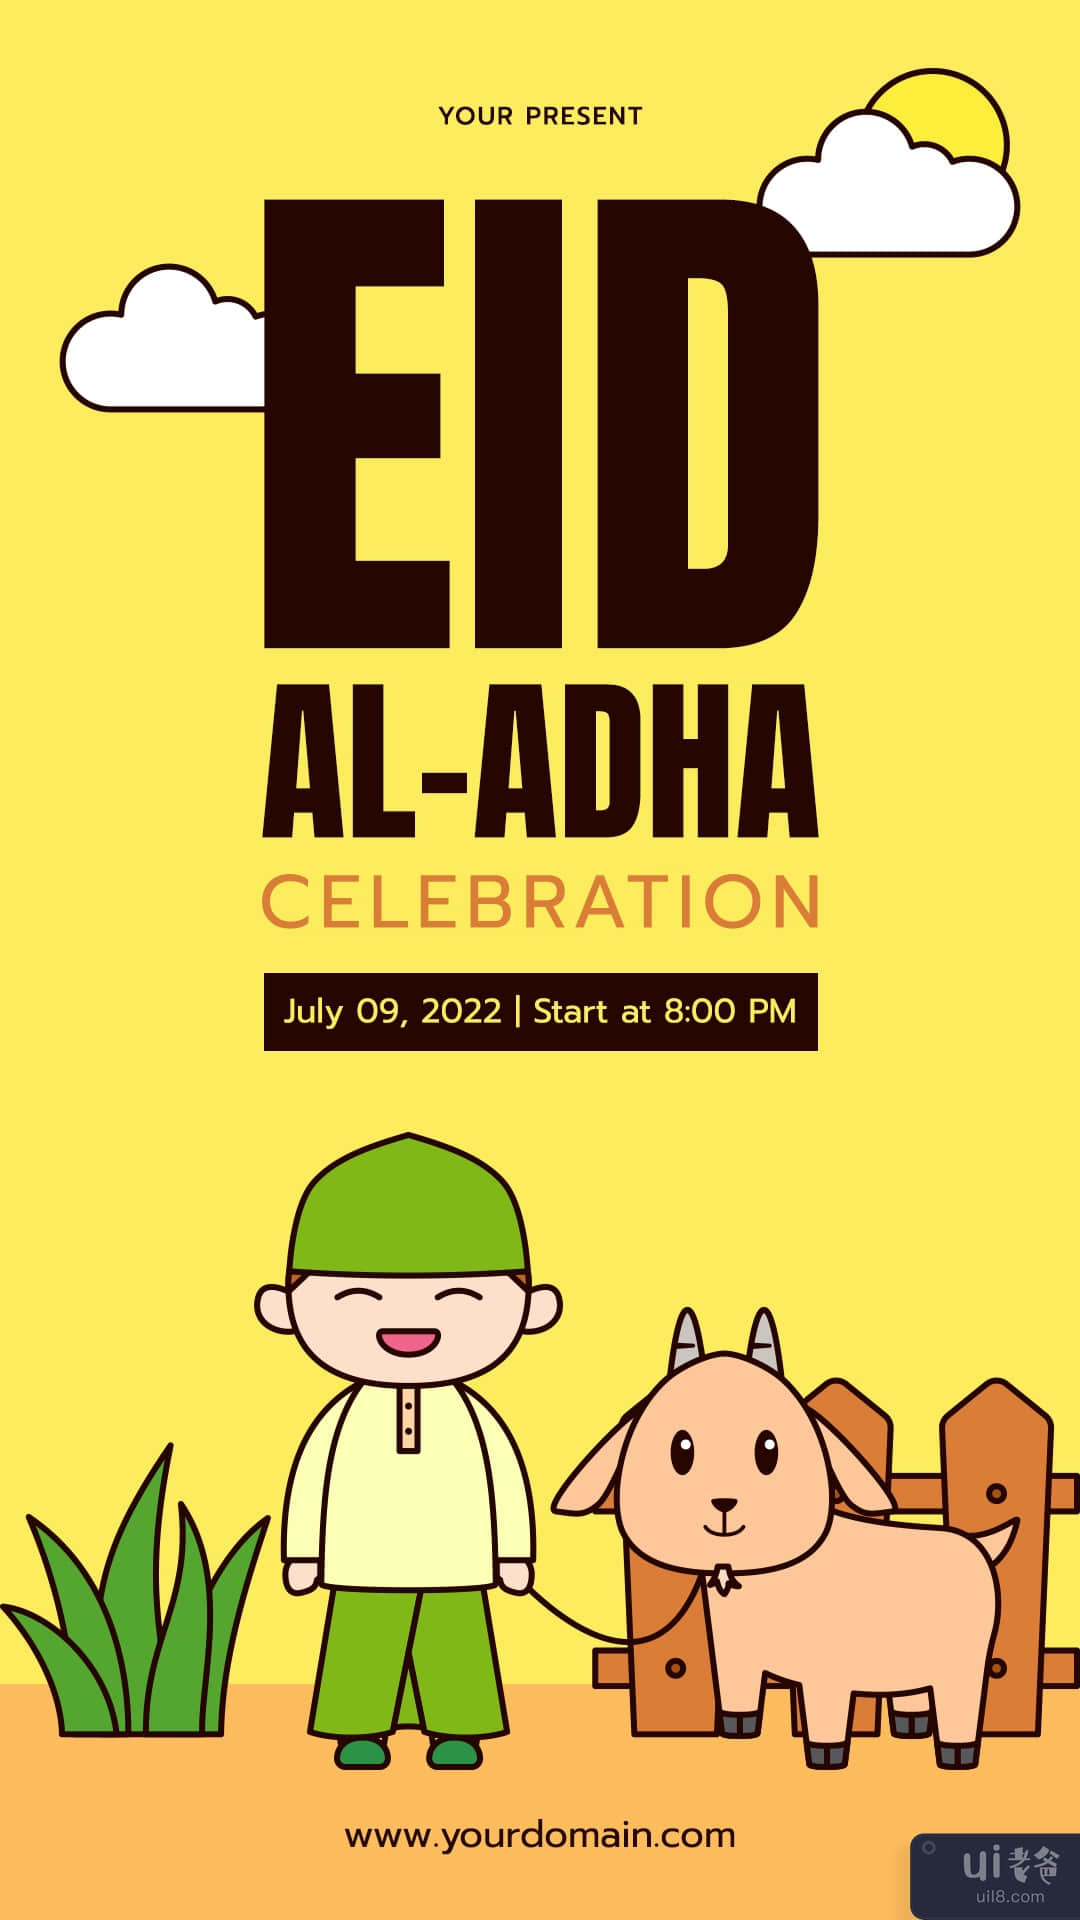 宰牲节庆祝 Instagram 故事(Eid al Adha Celebration Instagram Stories)插图1